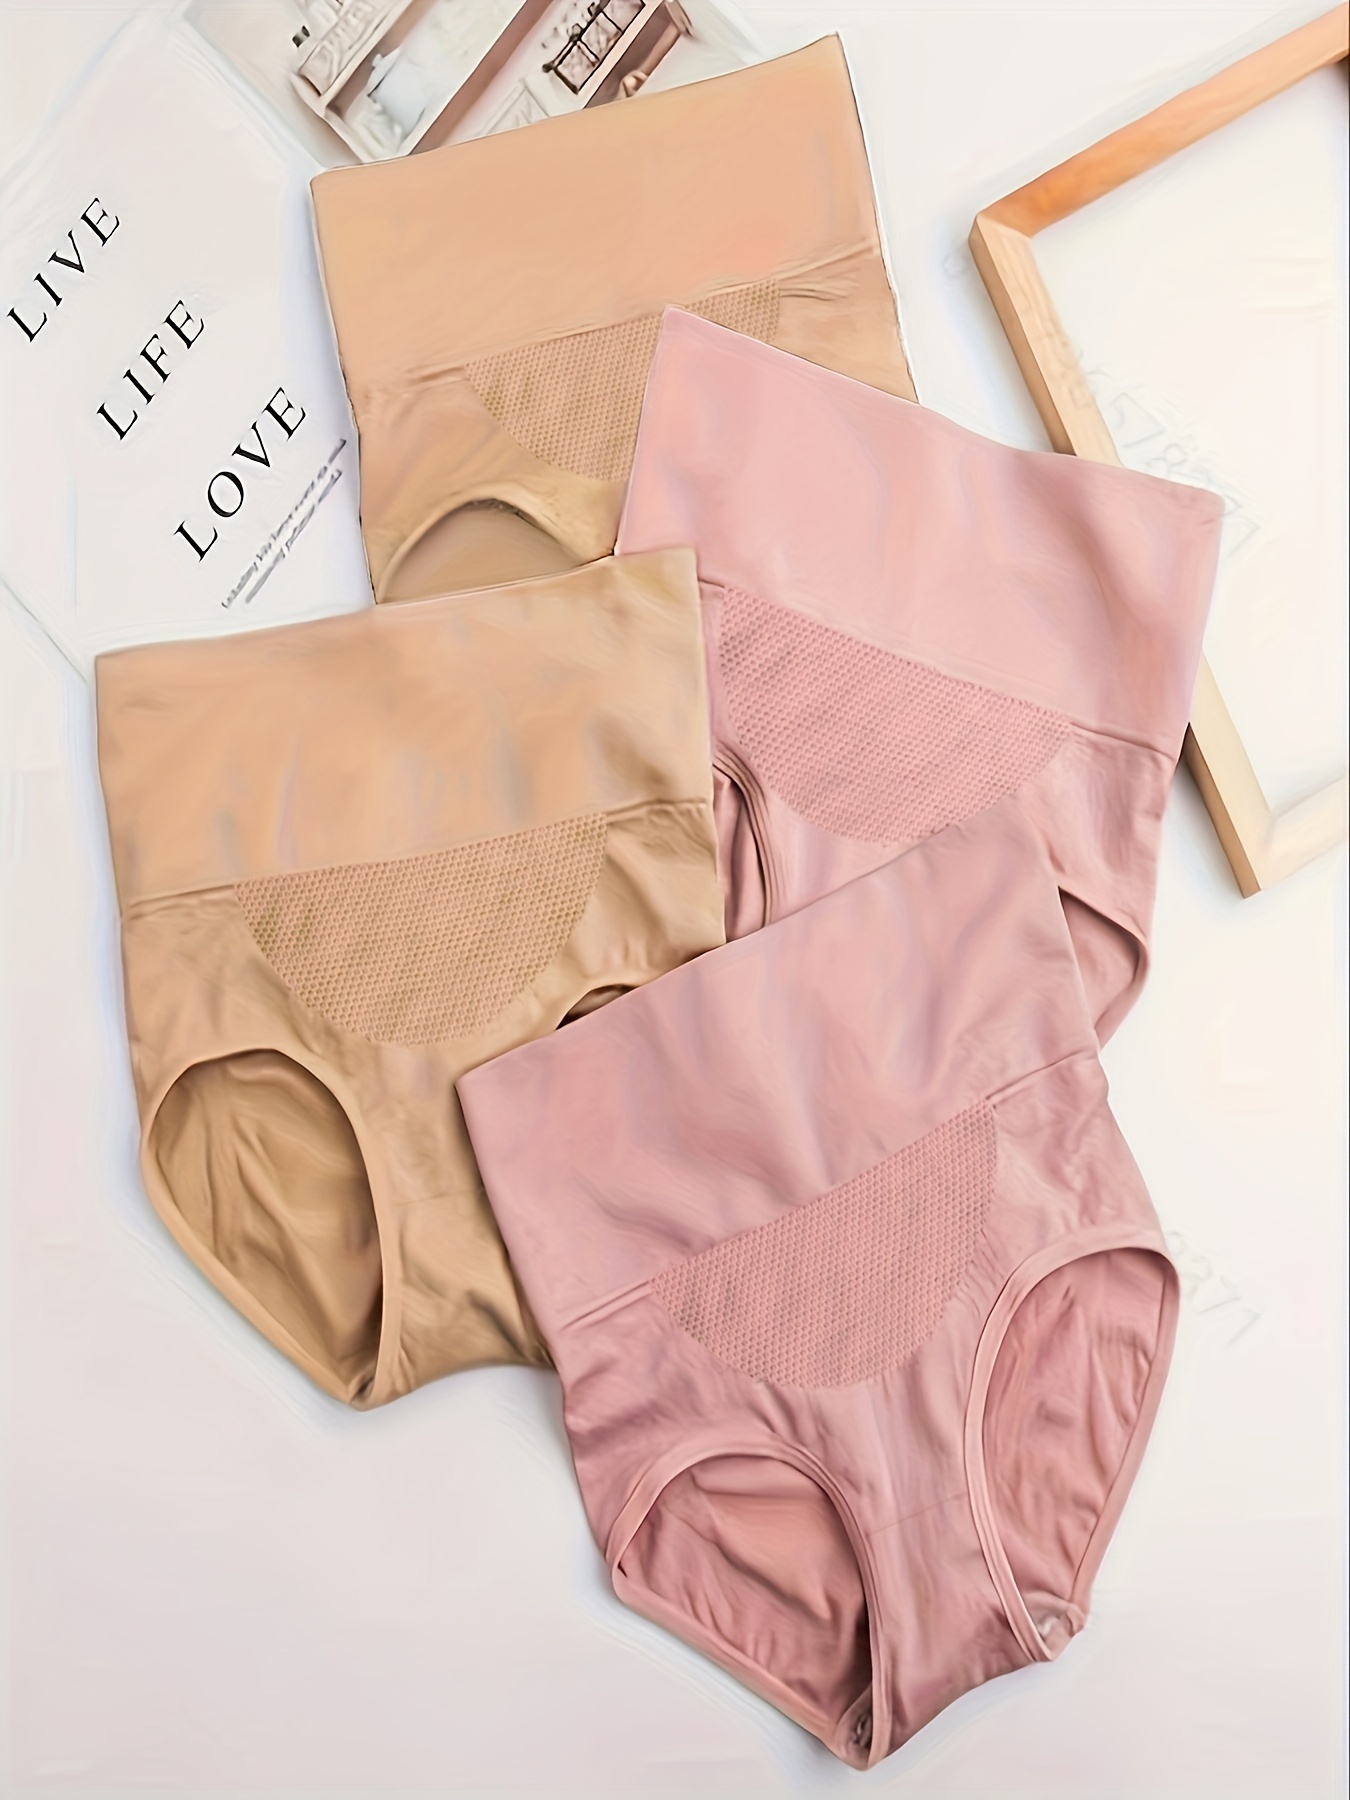 Best Deal for Silky High Waist Shaping Panties for Women Butt Lifting